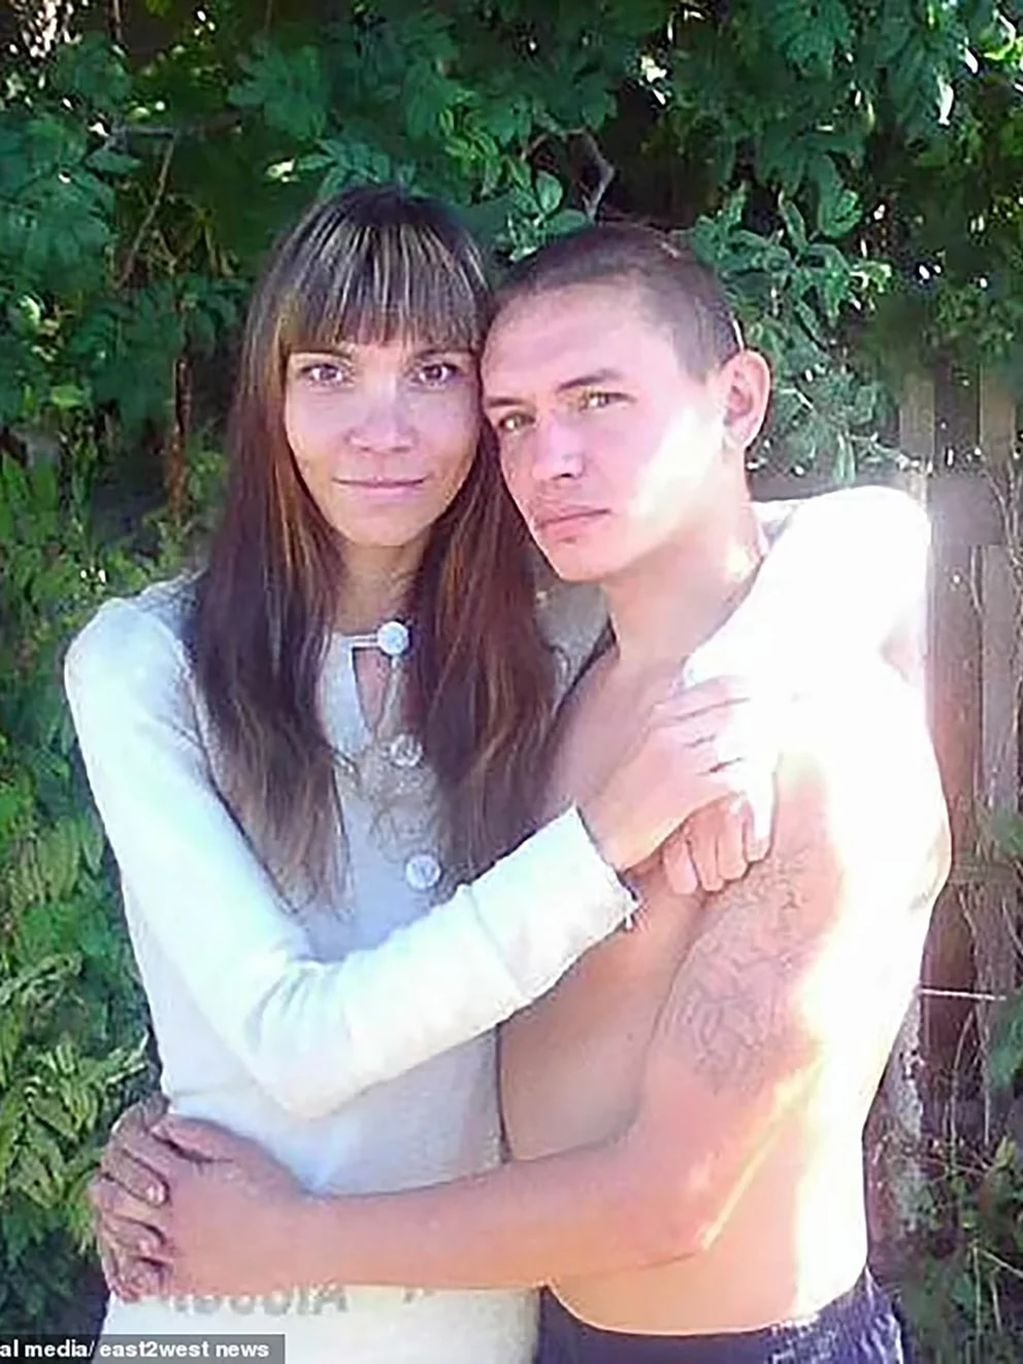 El femicida ruso asesinó a su esposa enfrente de los invitados | Web